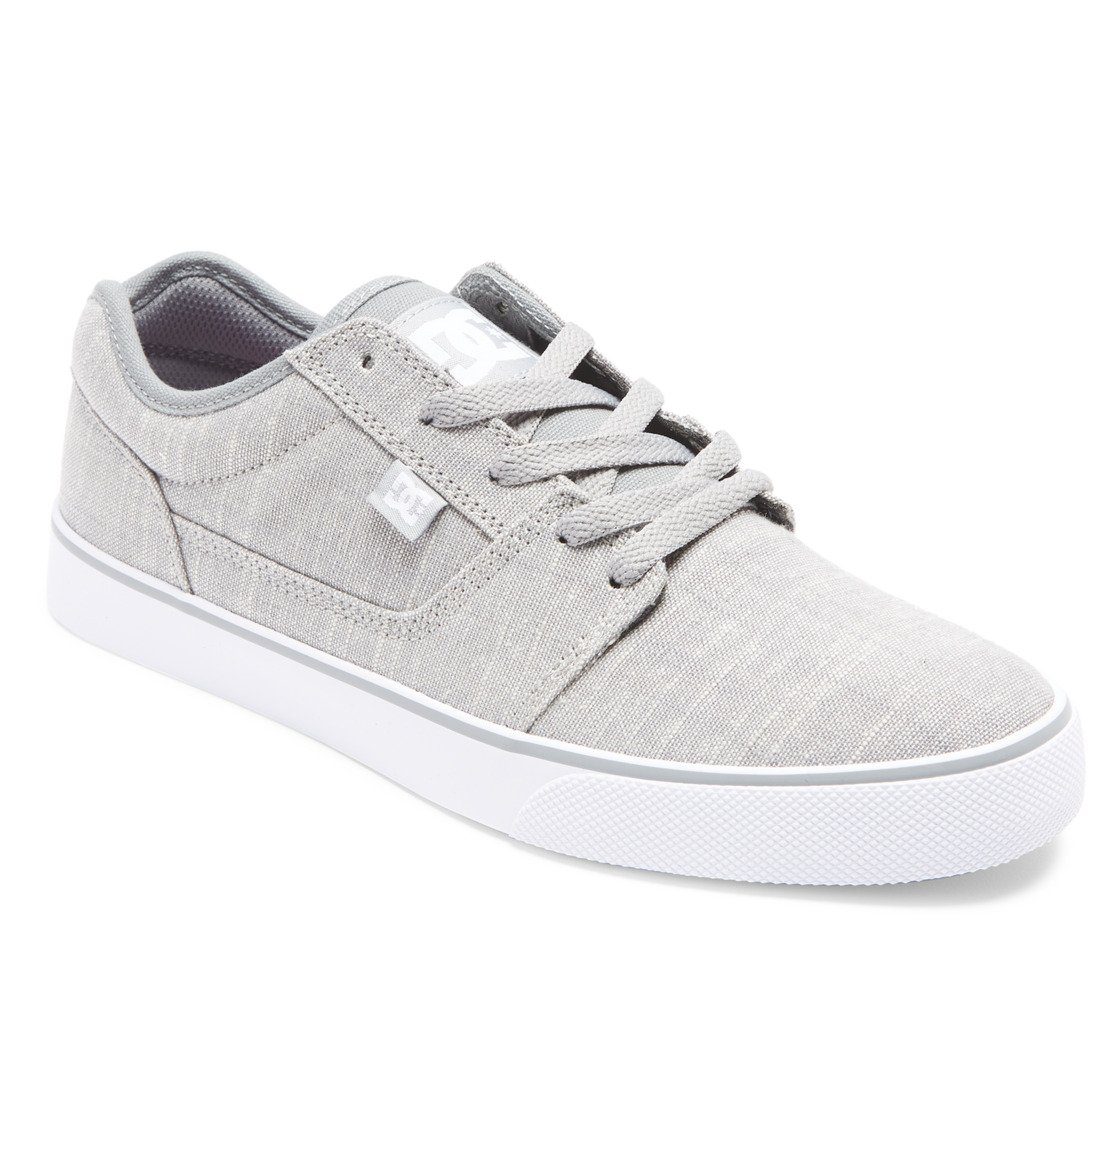 DC Shoes Tonik Tx Se Sneaker Grey/Light Grey